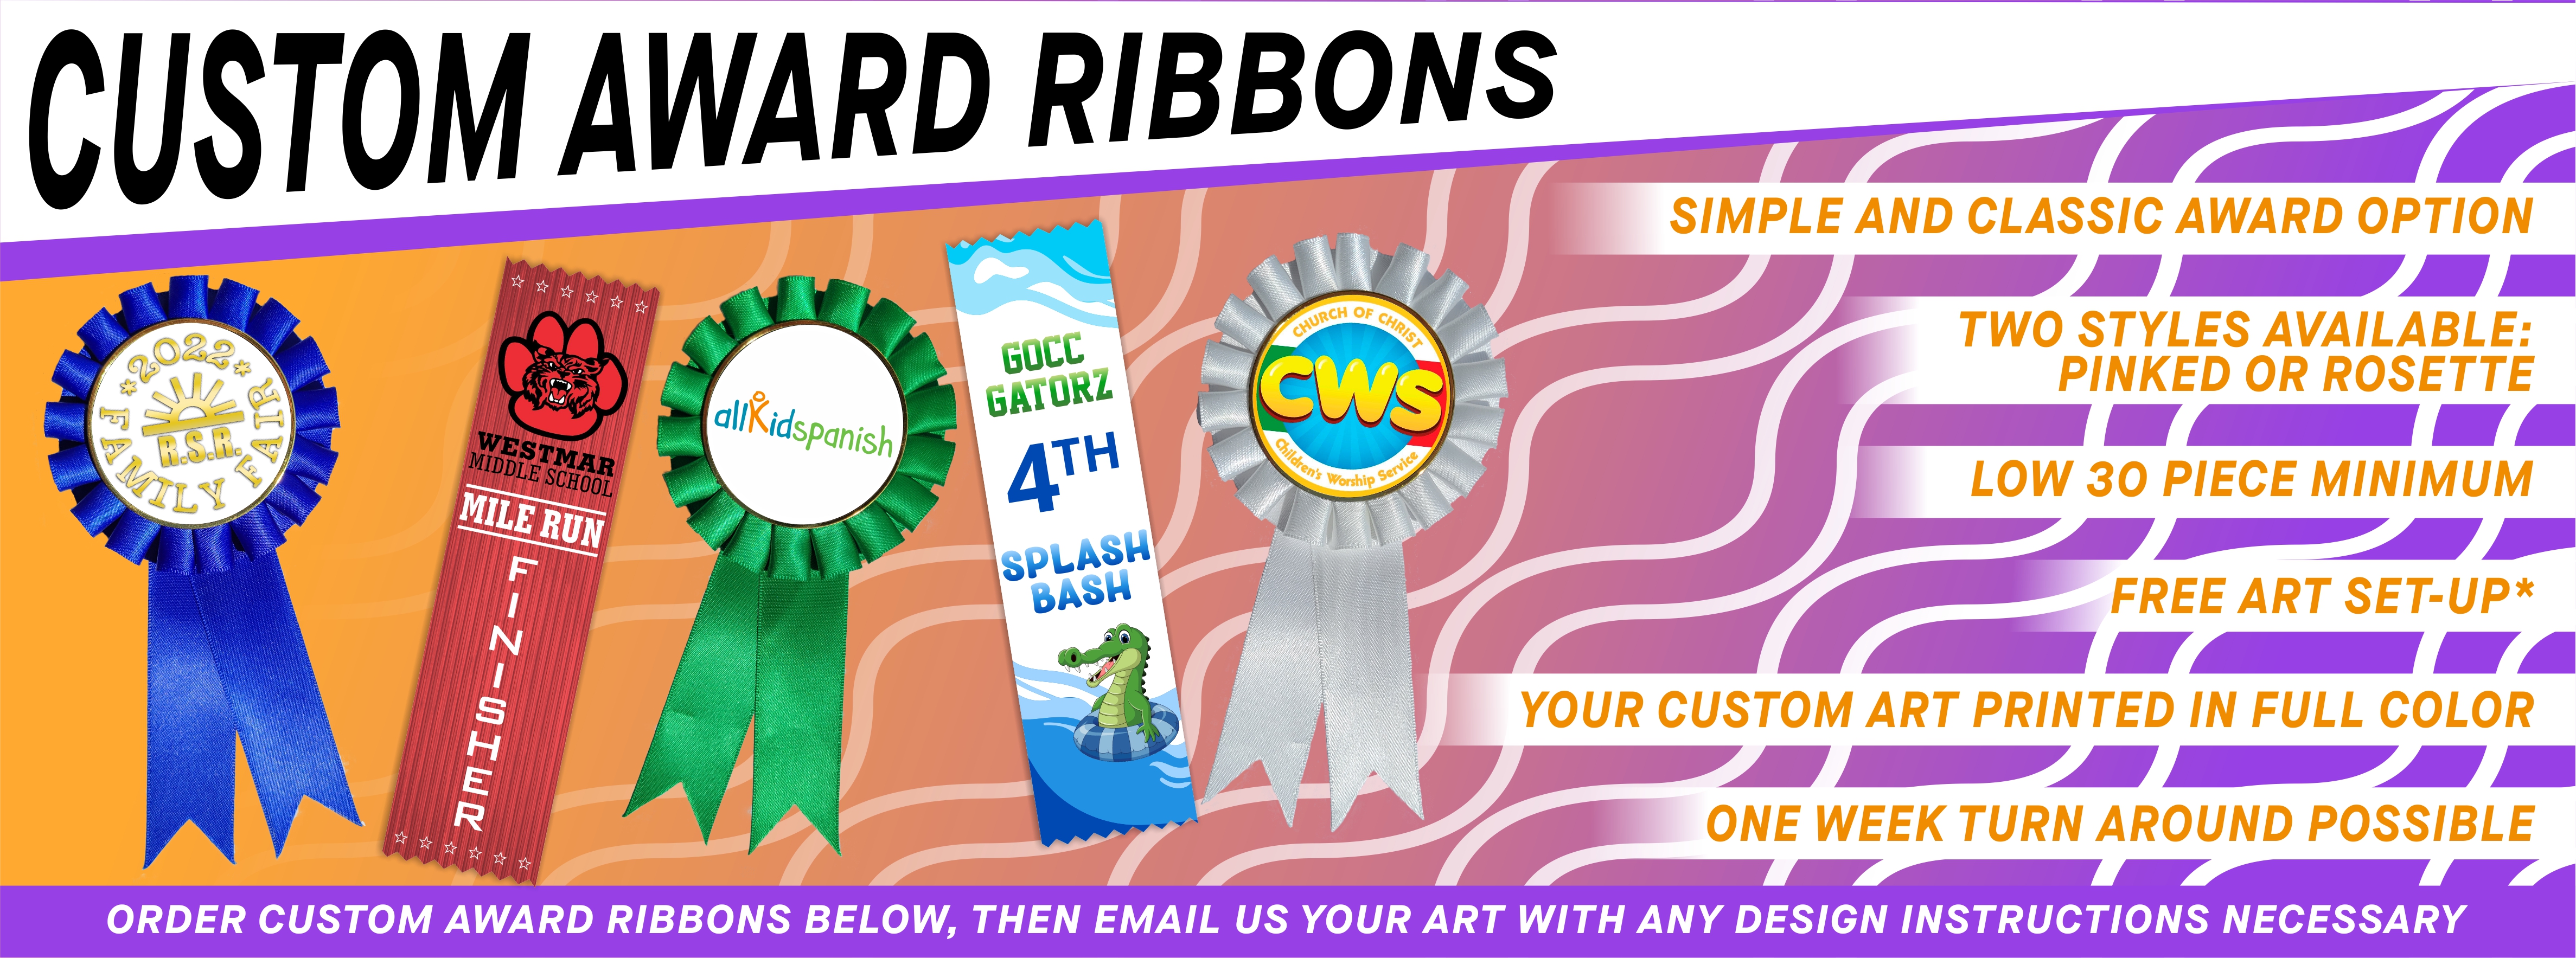 Custom Award Ribbons